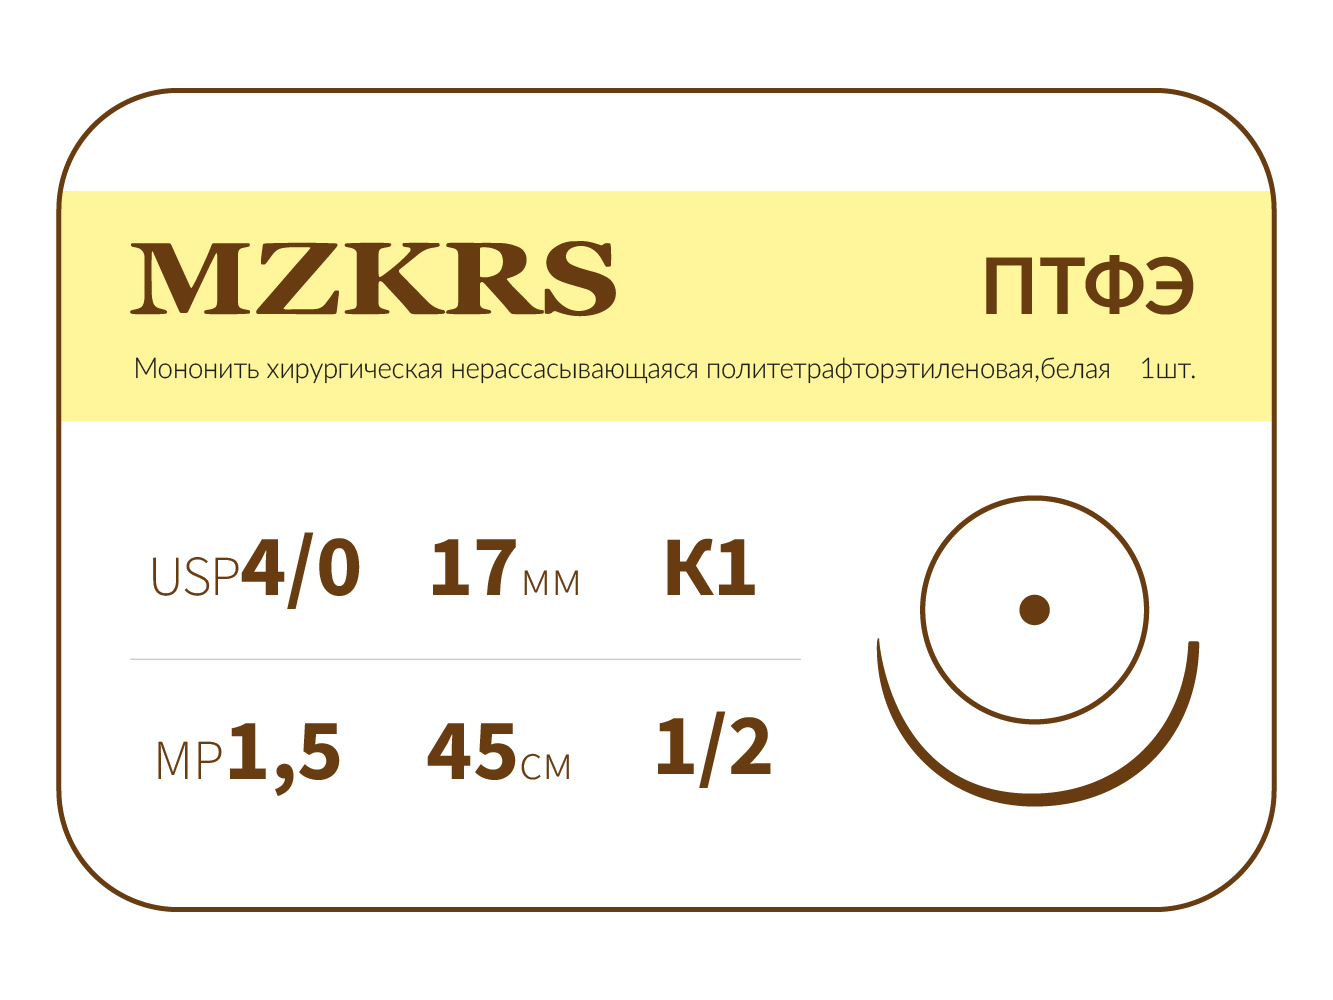 1712К1-Premium 4/0 (1.5) 45 ПТФЭ хирургическая нить политетрафторэтиленовая, MZKRS (Россия)